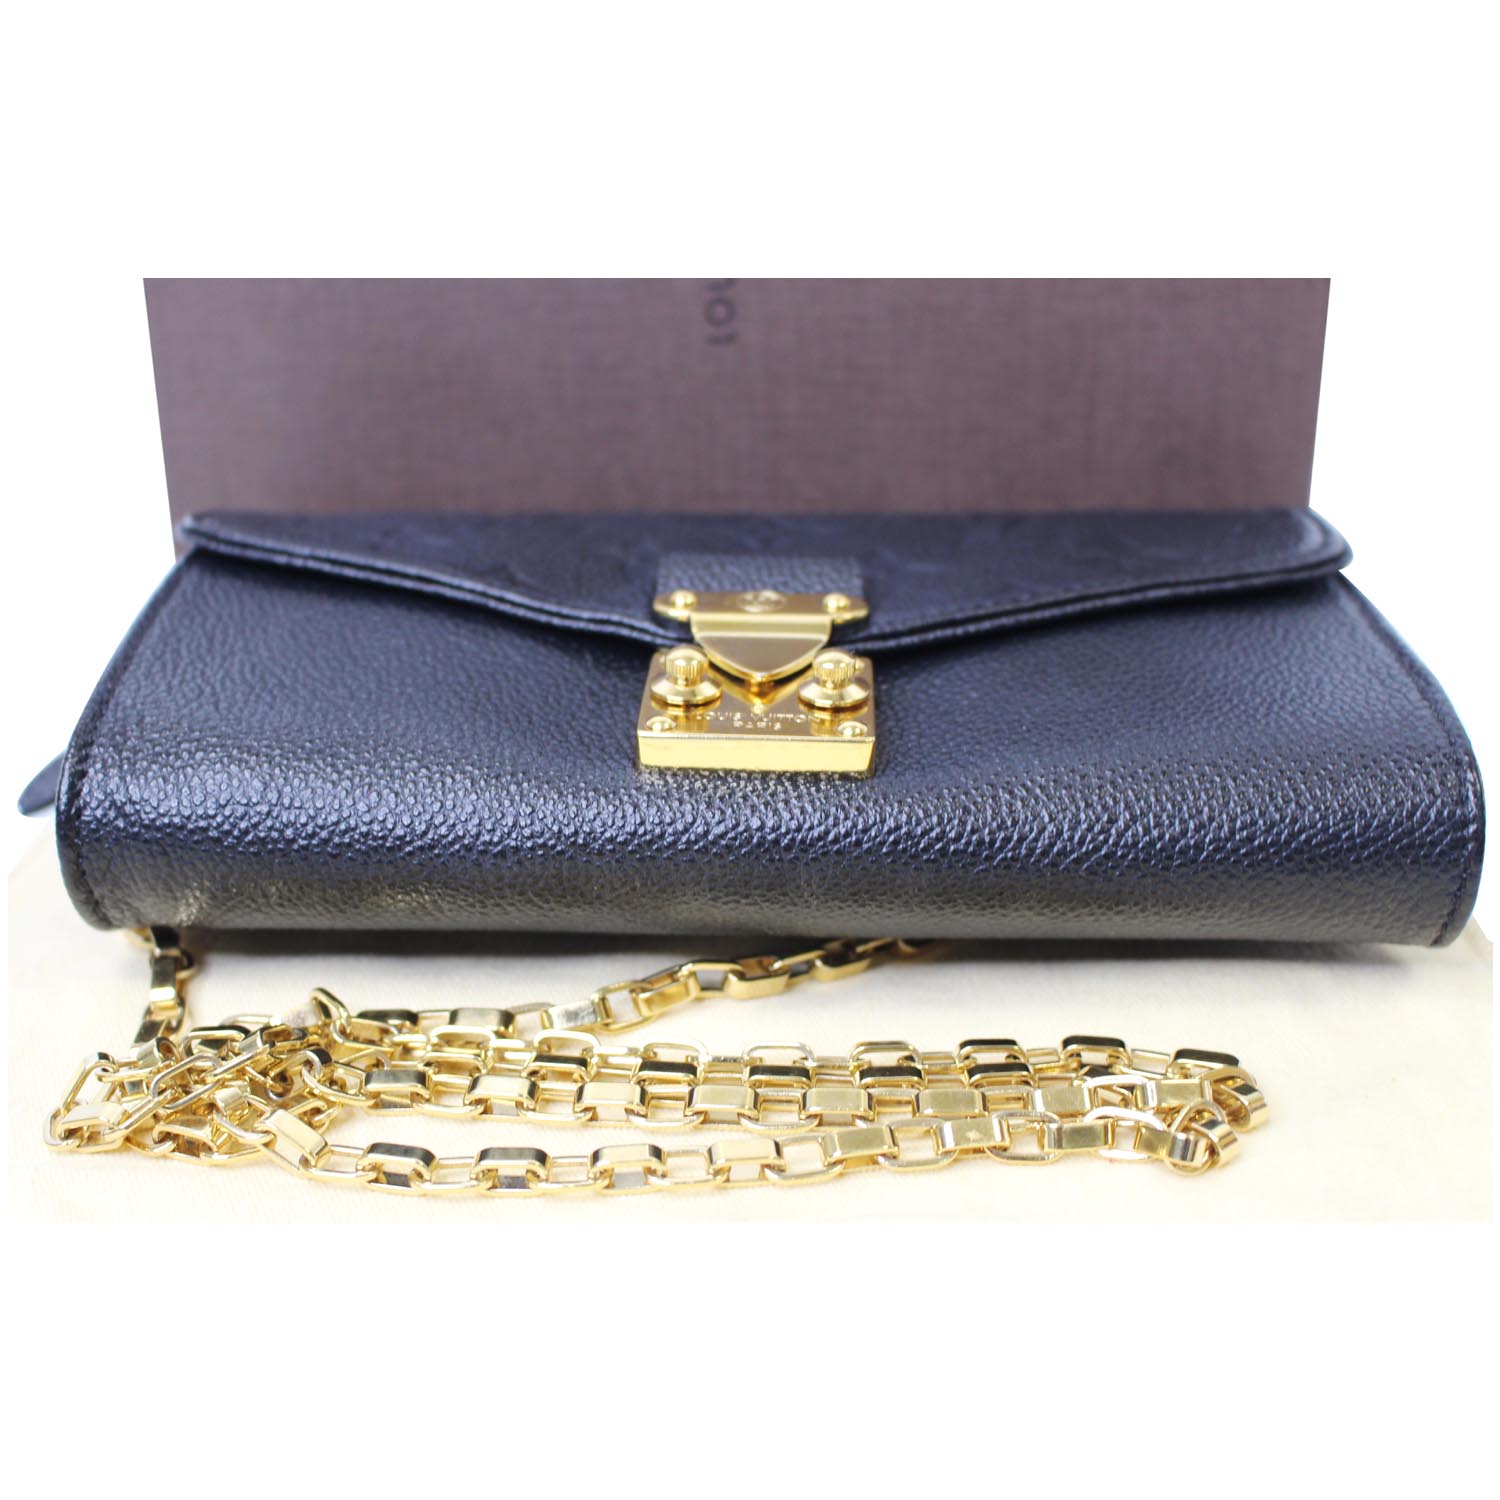 Louis Vuitton Orient Monogram Empreinte Leather St Germain PM Bag